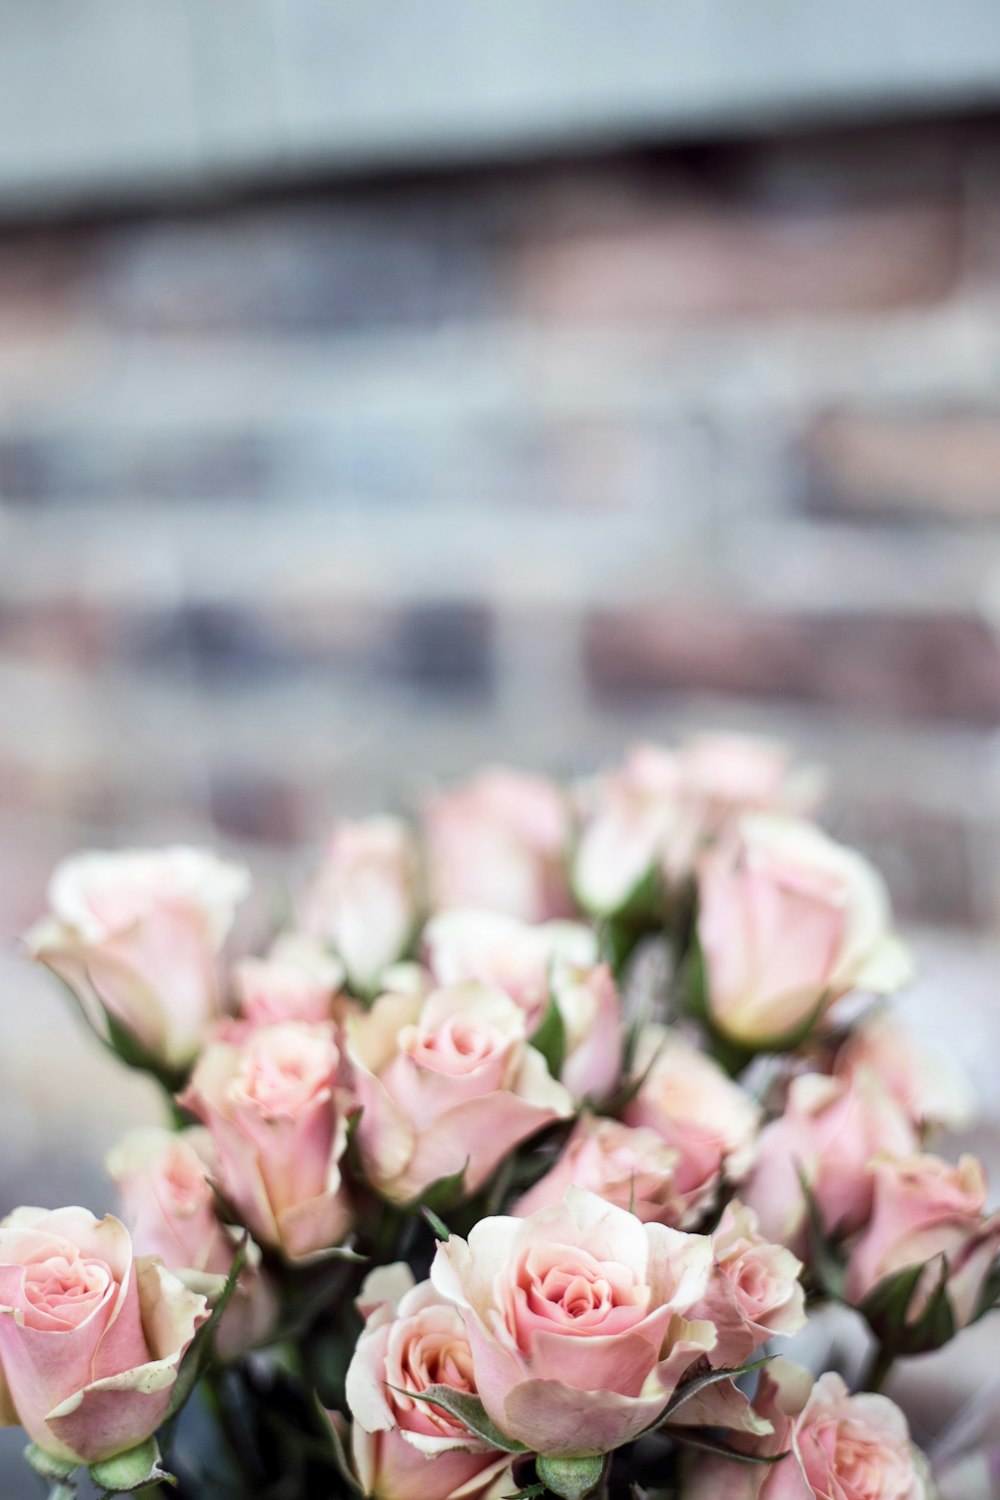 핑크 장미 꽃의 선택적 초점 사진